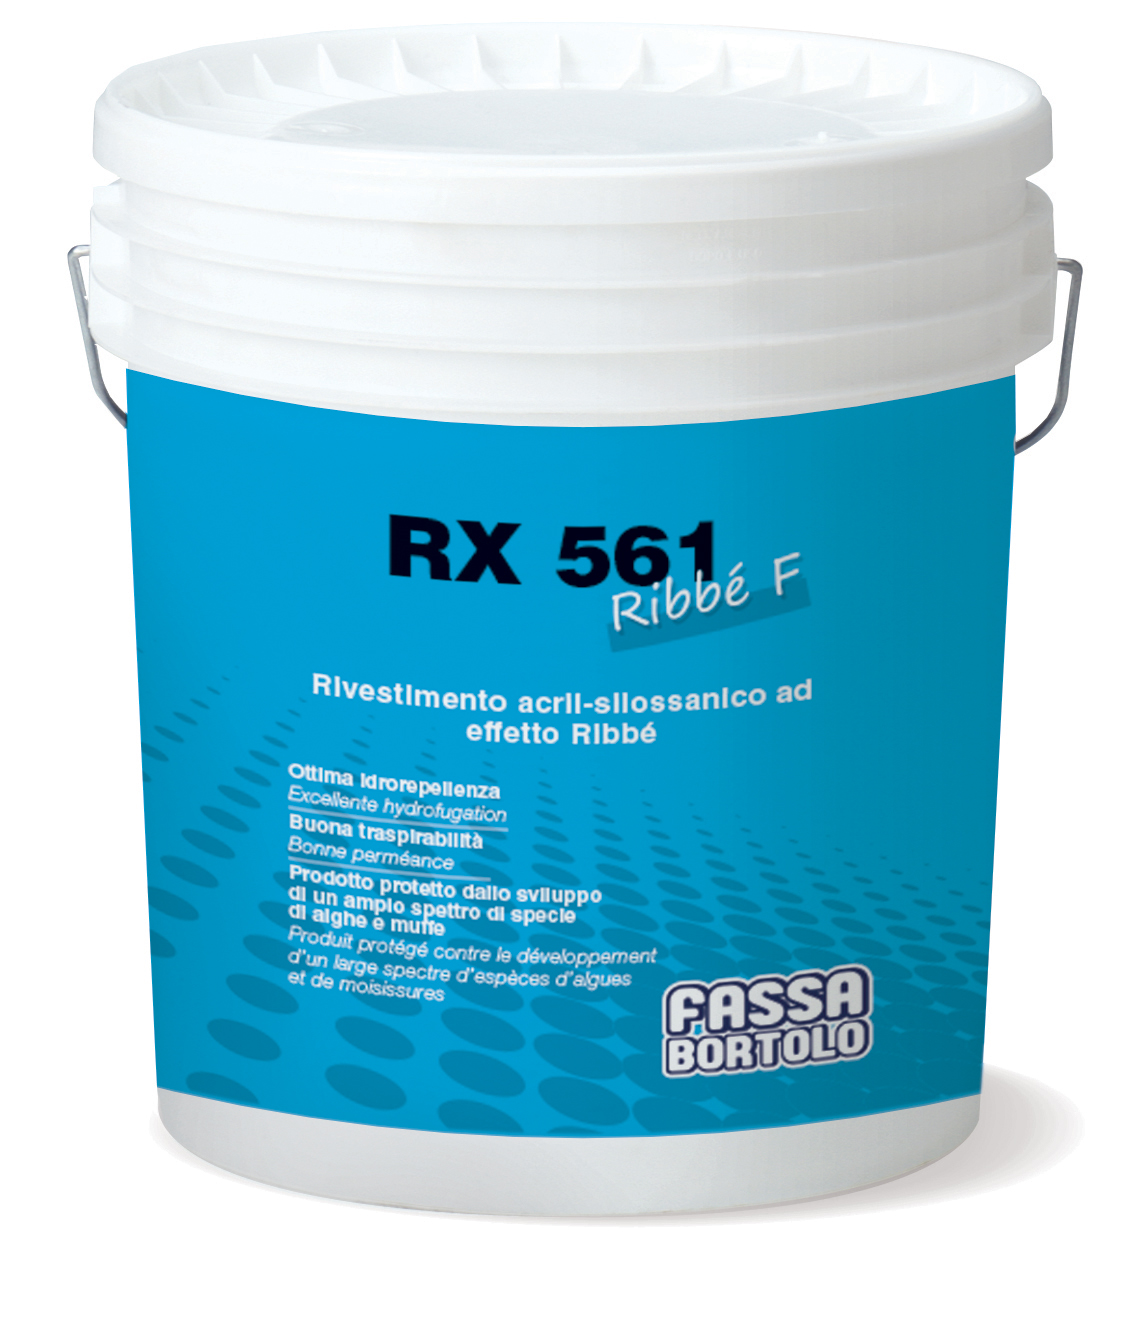 RX 561 Ribbé F: Rivestimento acril-silossanico ad effetto Ribbé